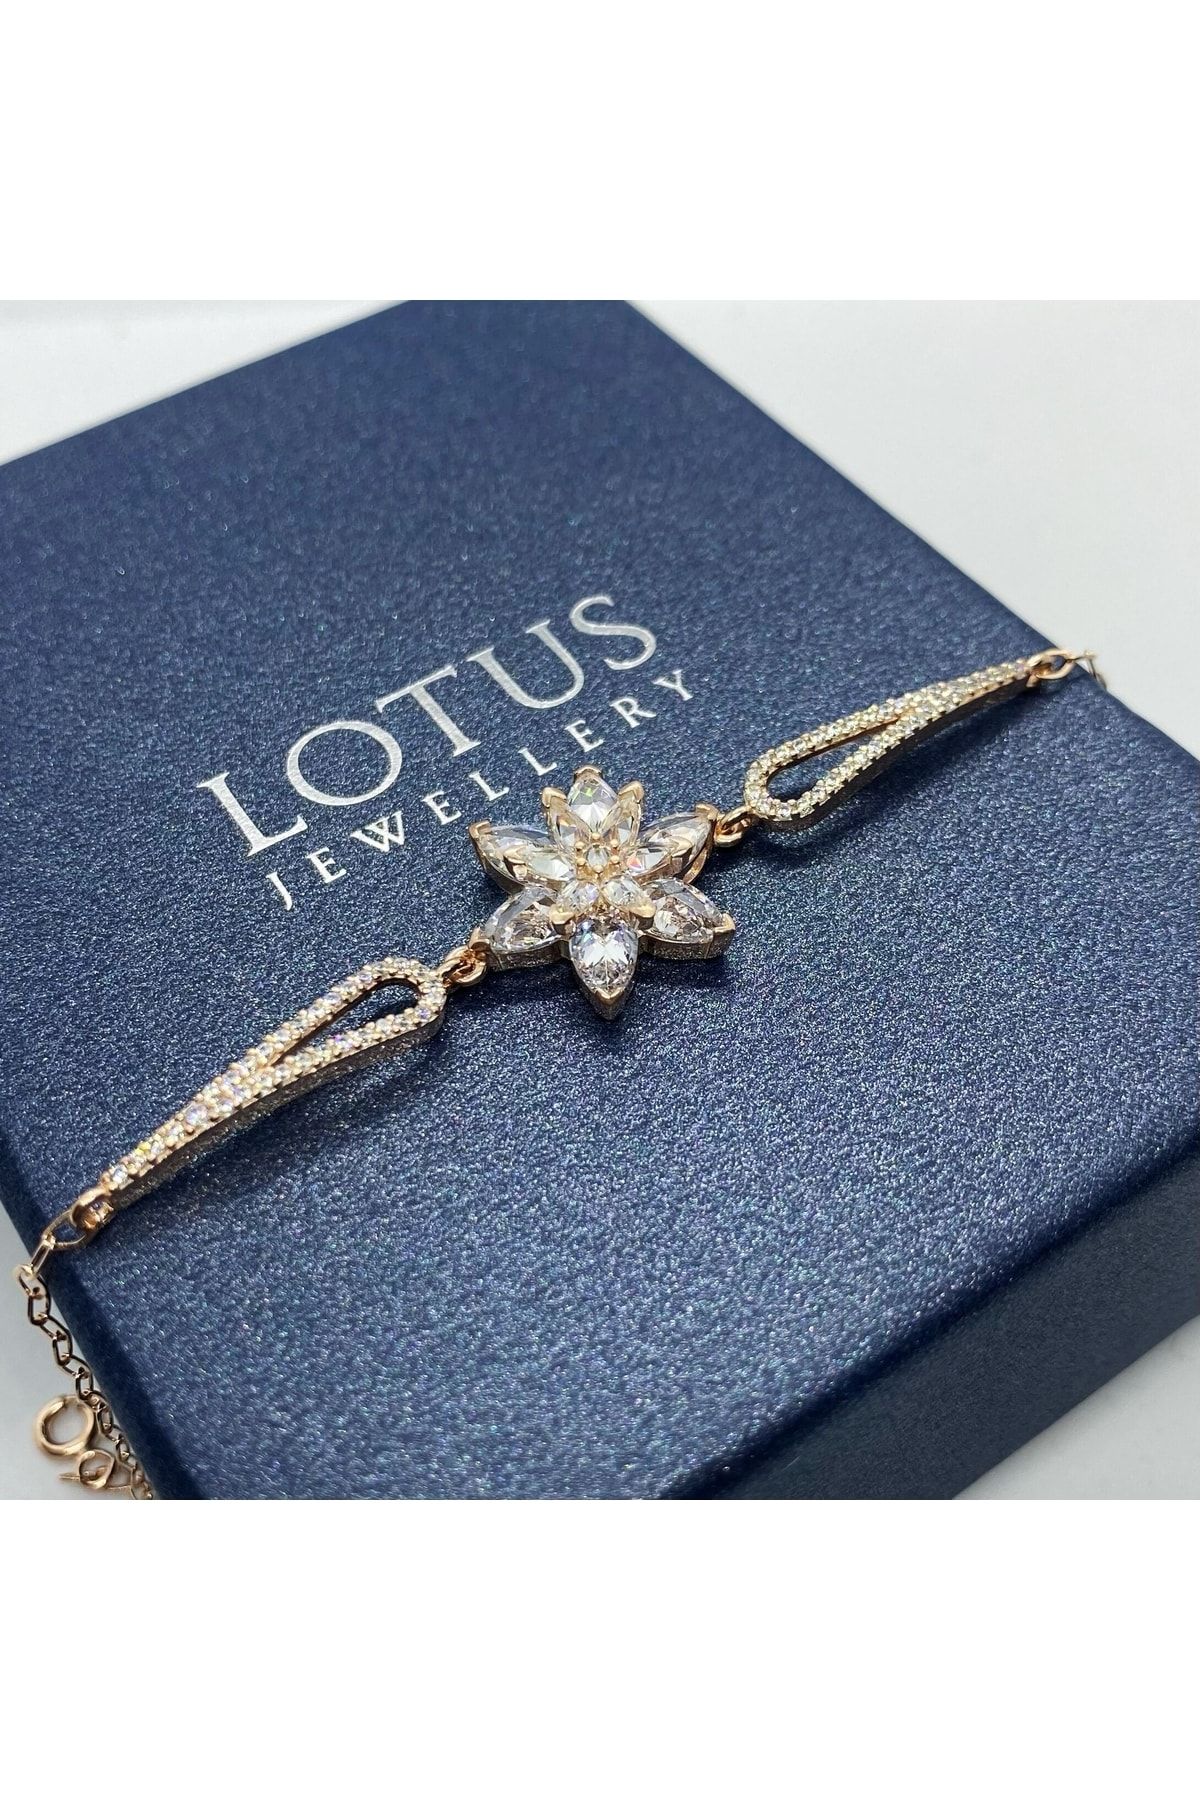 LOTUS JW Lotus Çiçeği Bileklik | 925 Ayar Gümüş Bileklik